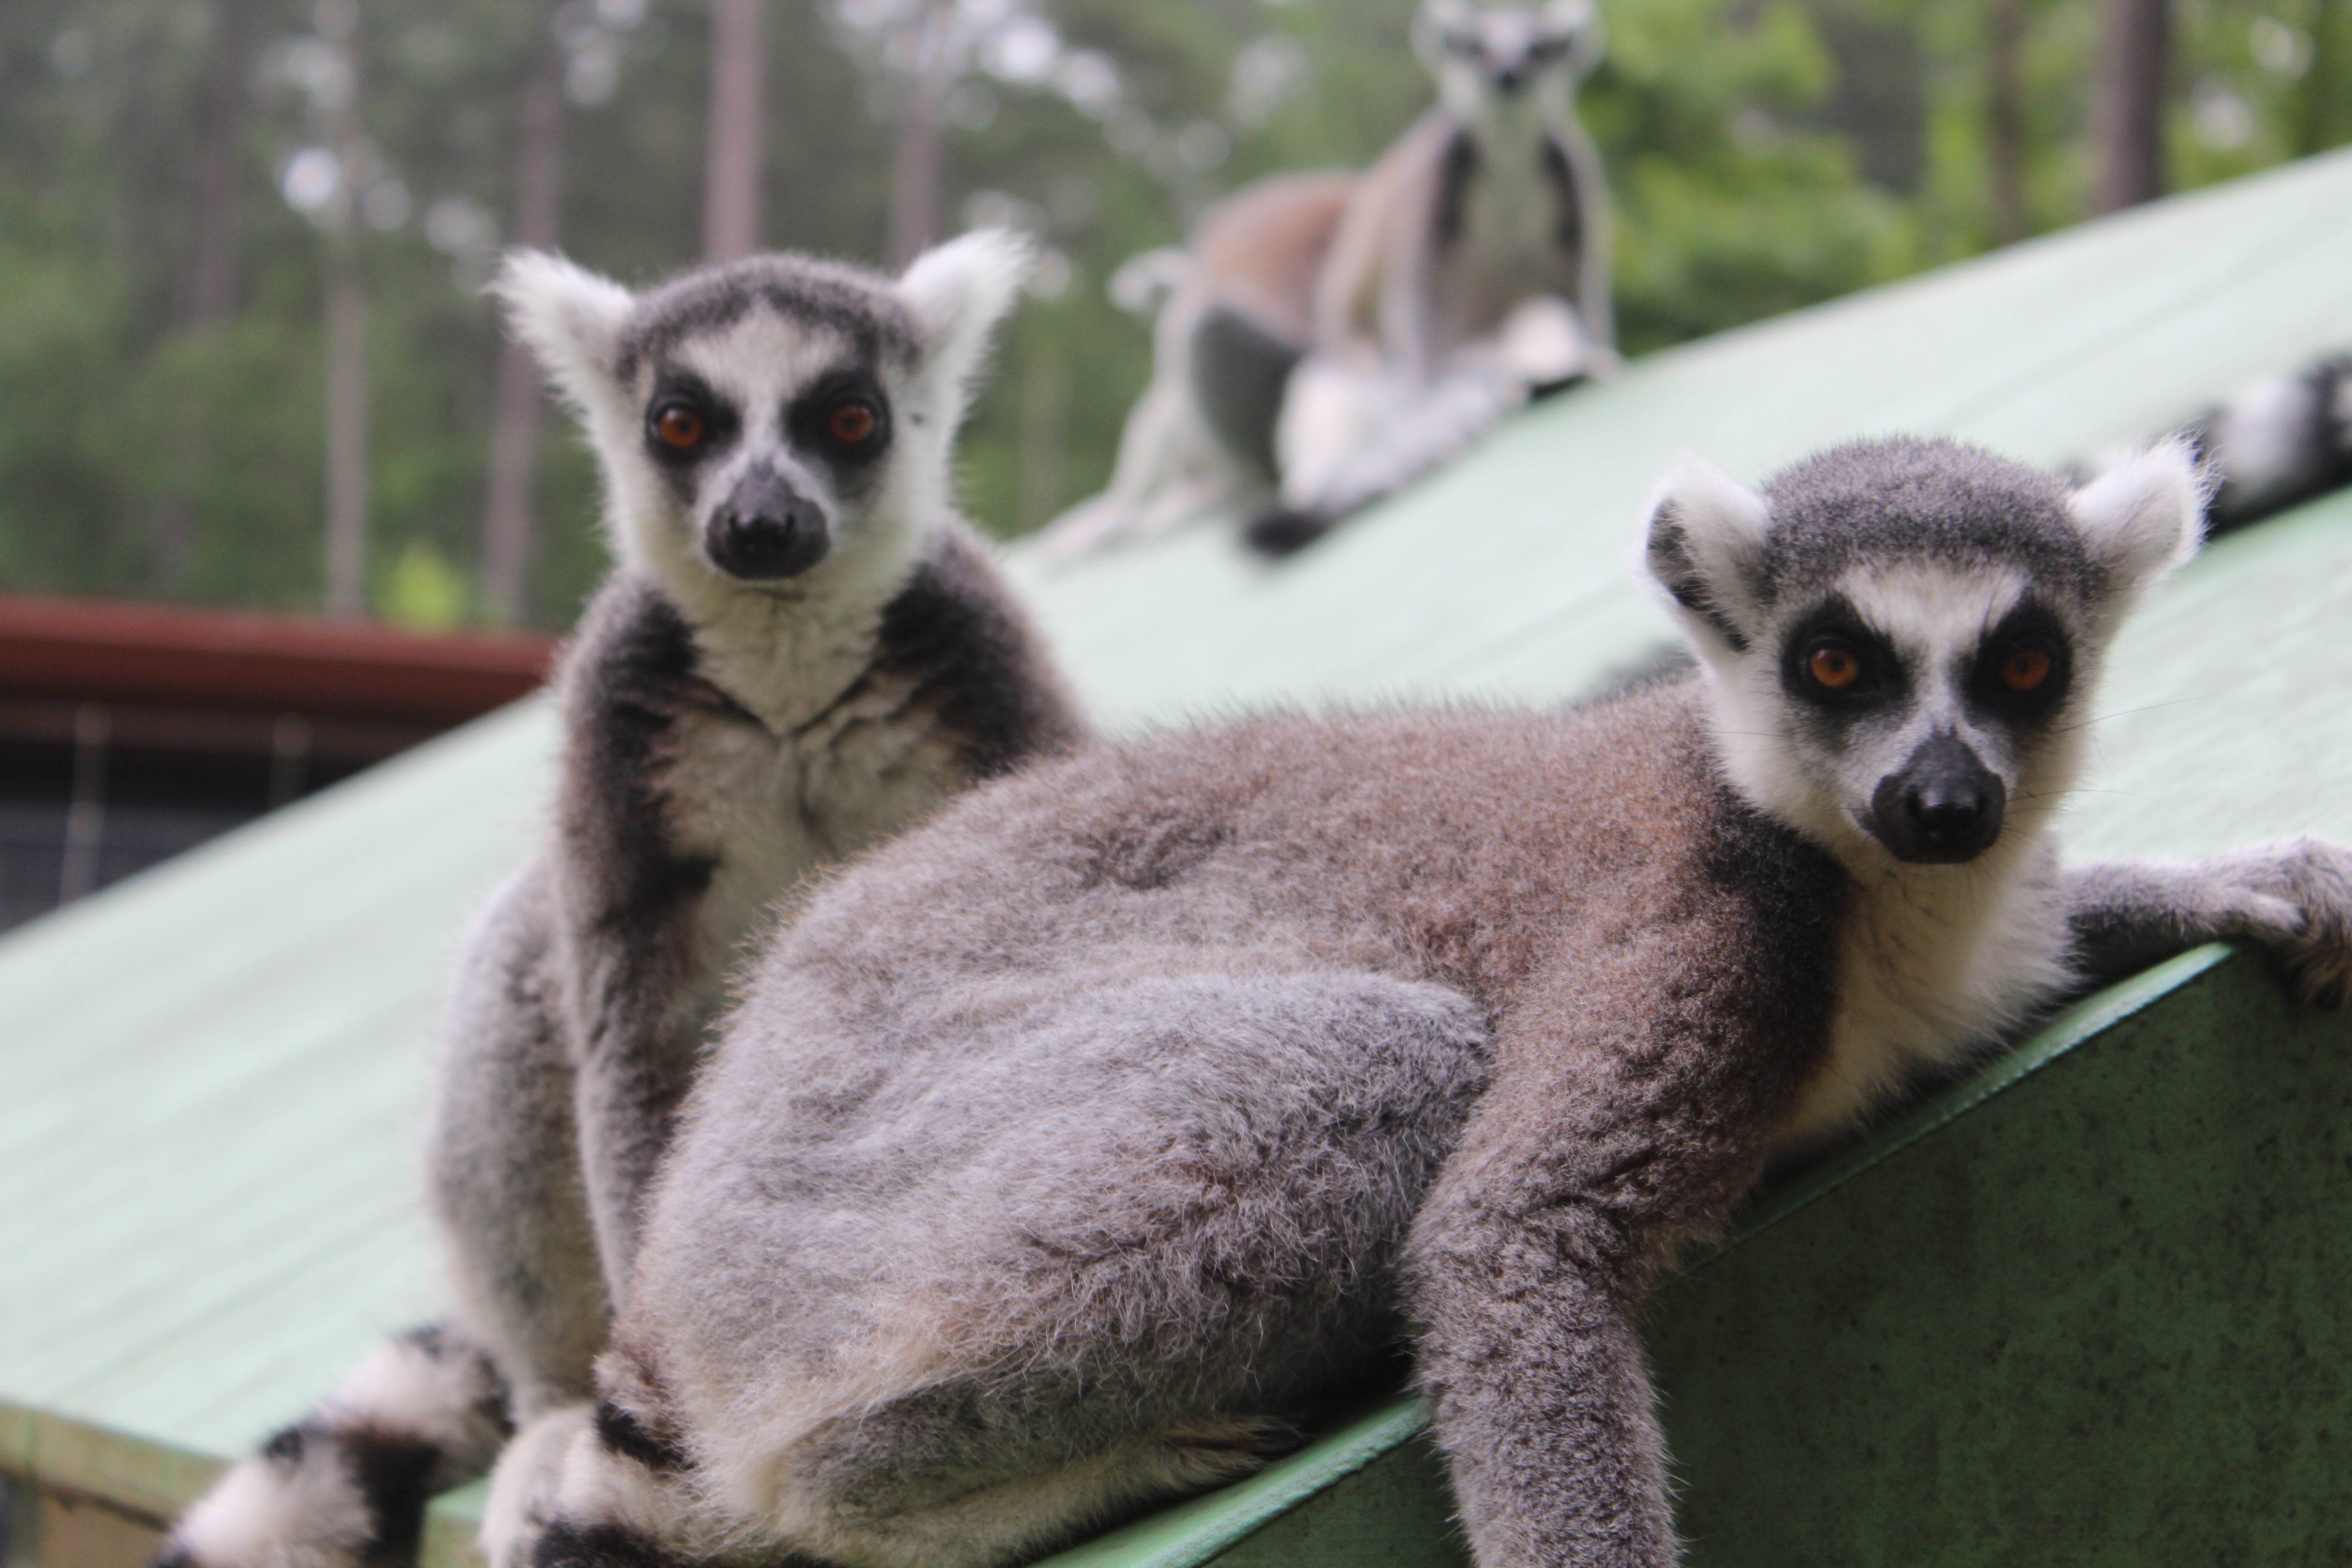 lemurs research